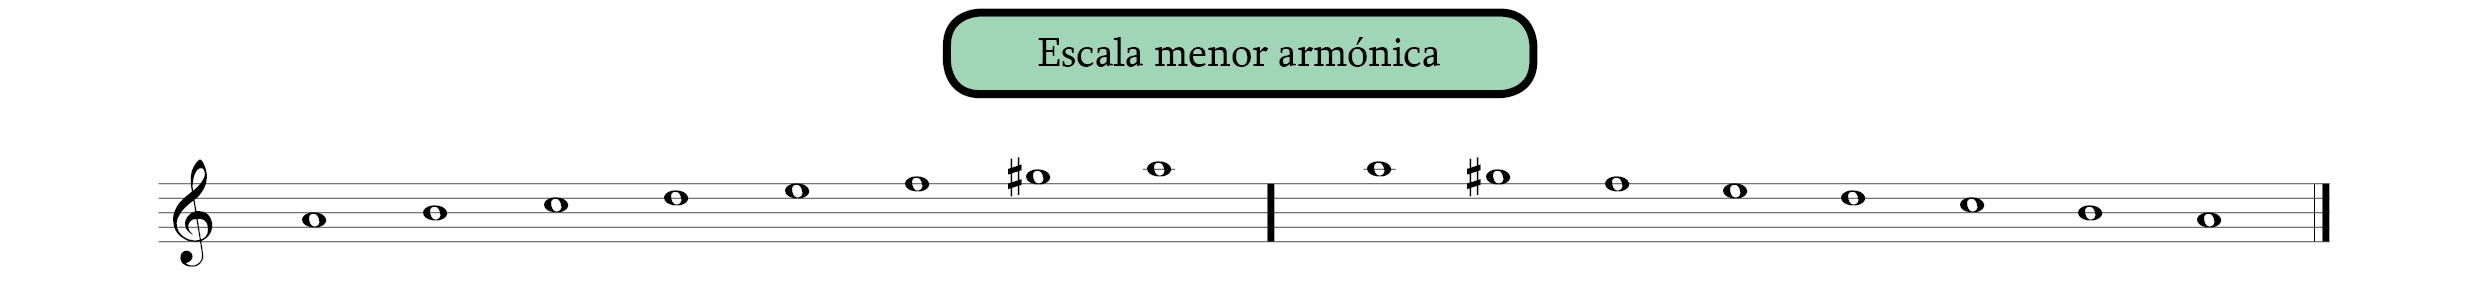 Escala diatónica menor armónica